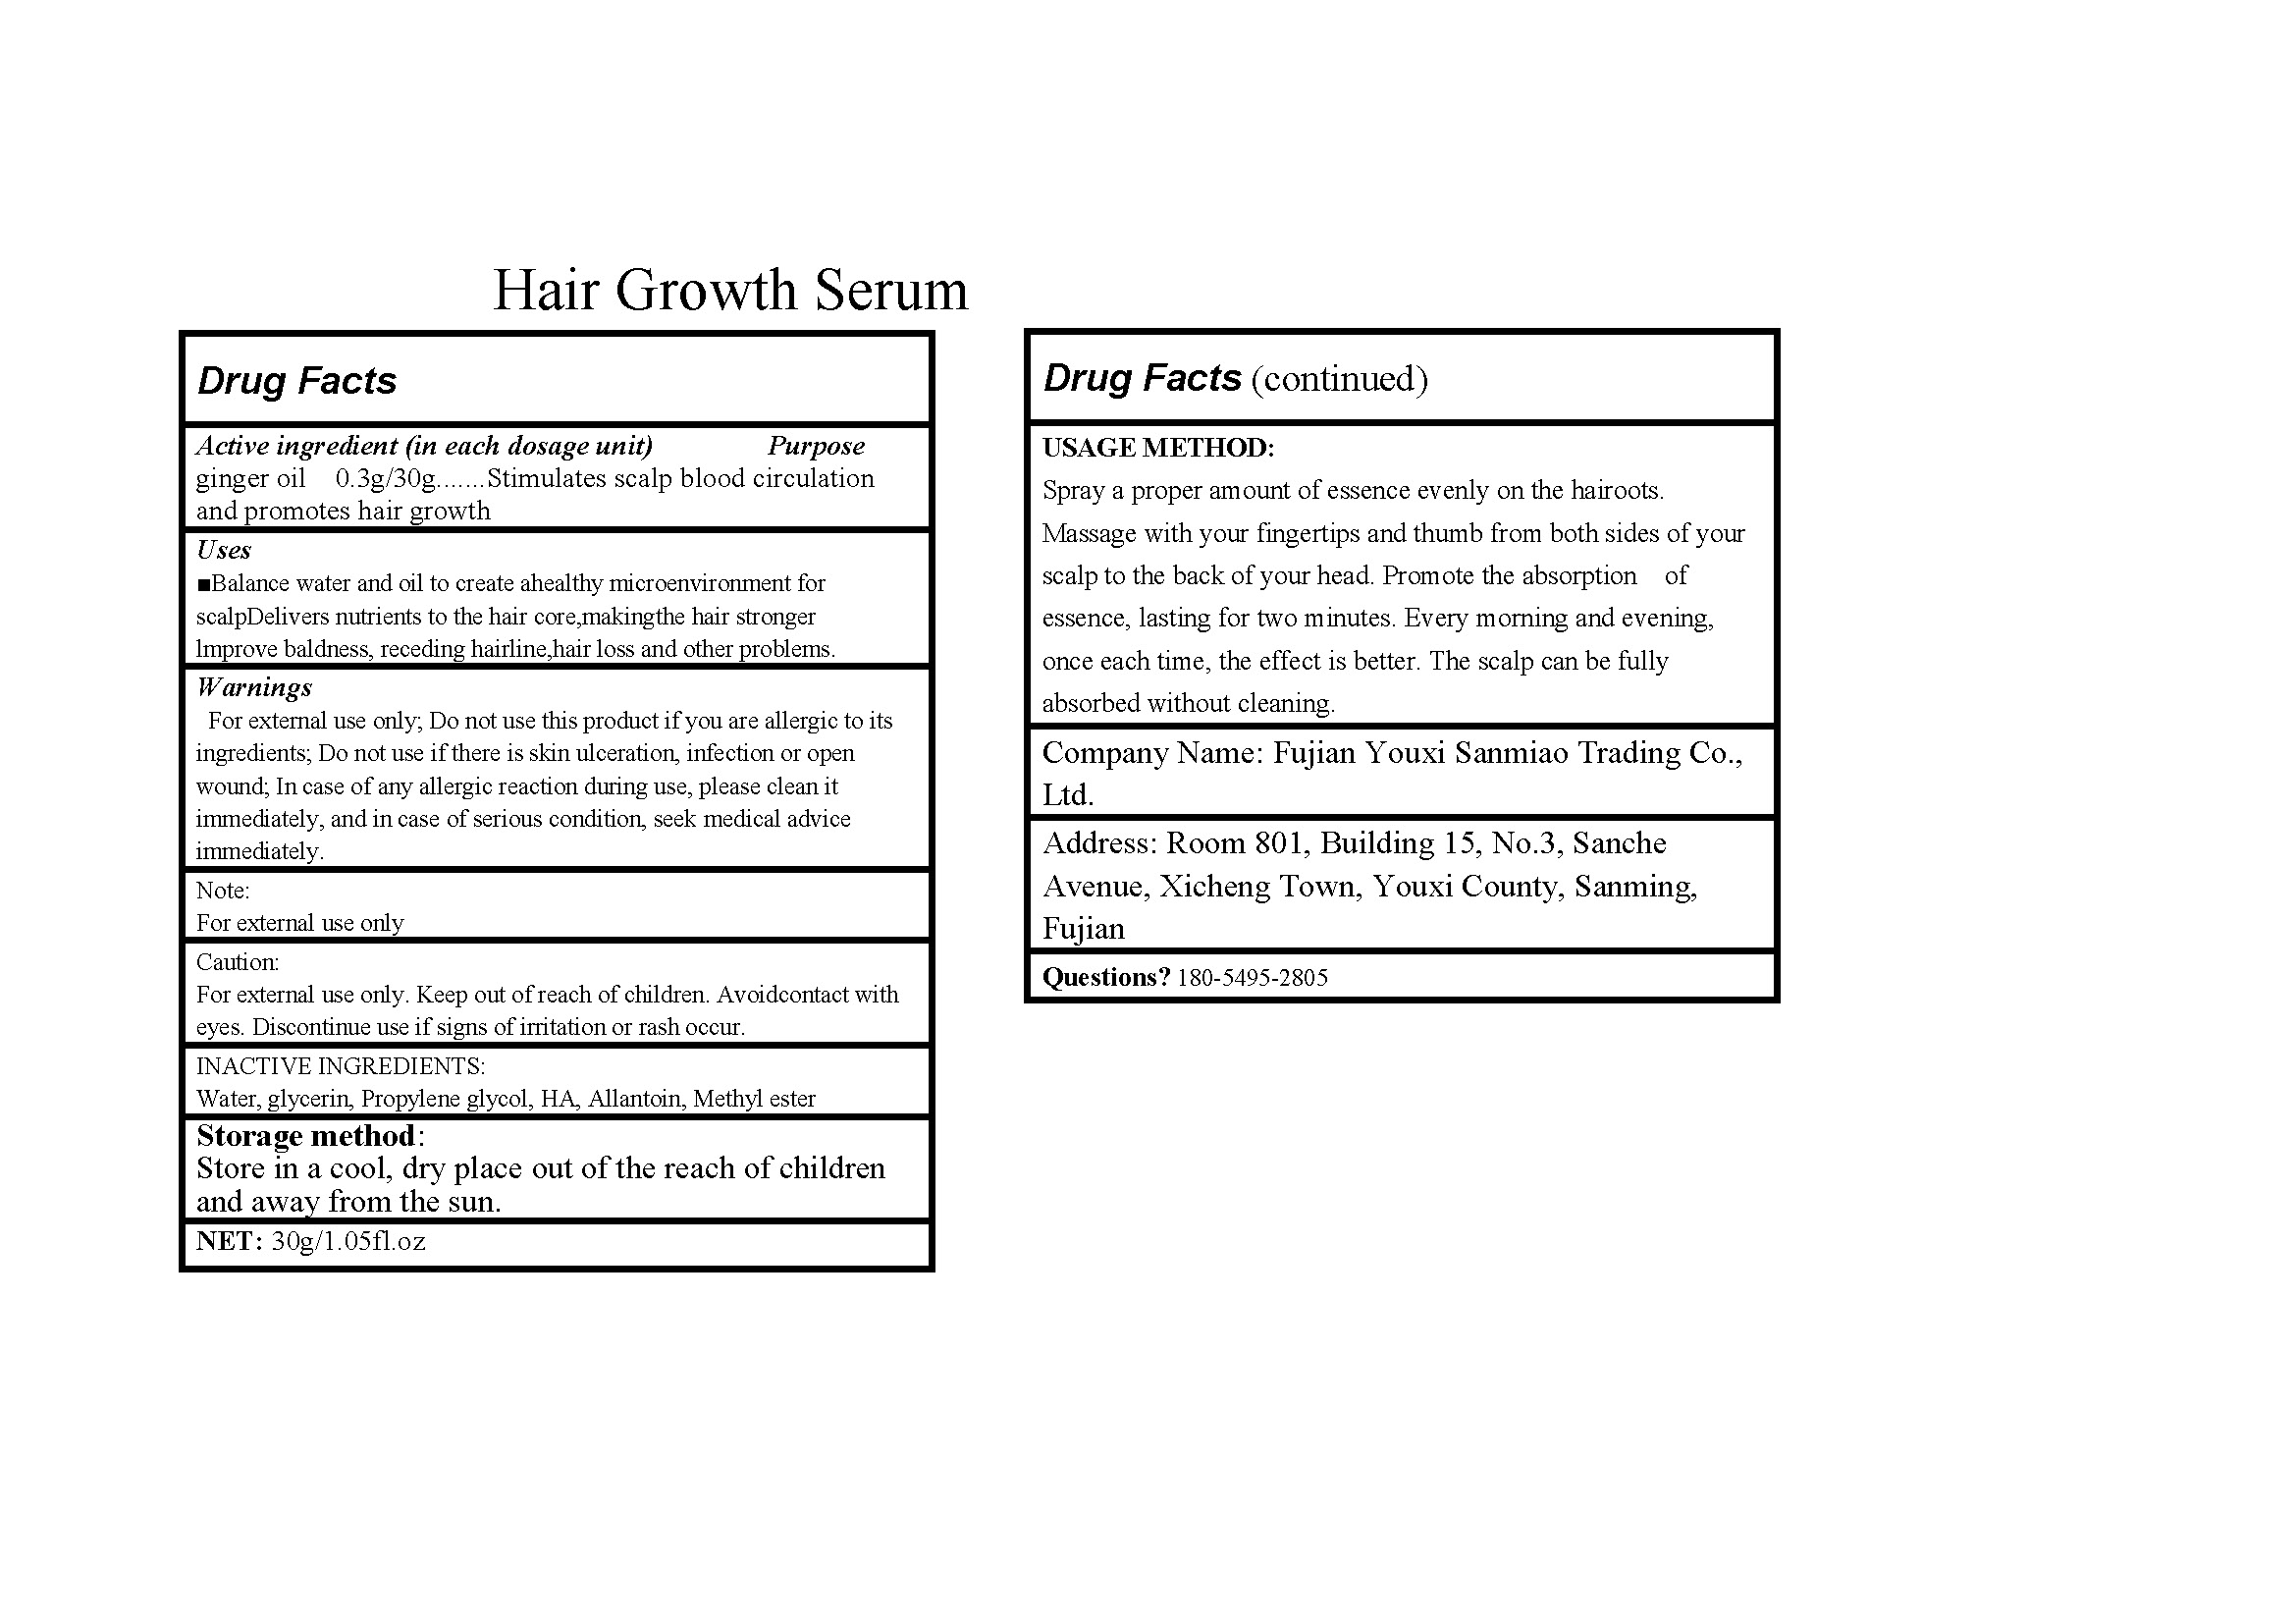 Hair growth serum 84518-001-11